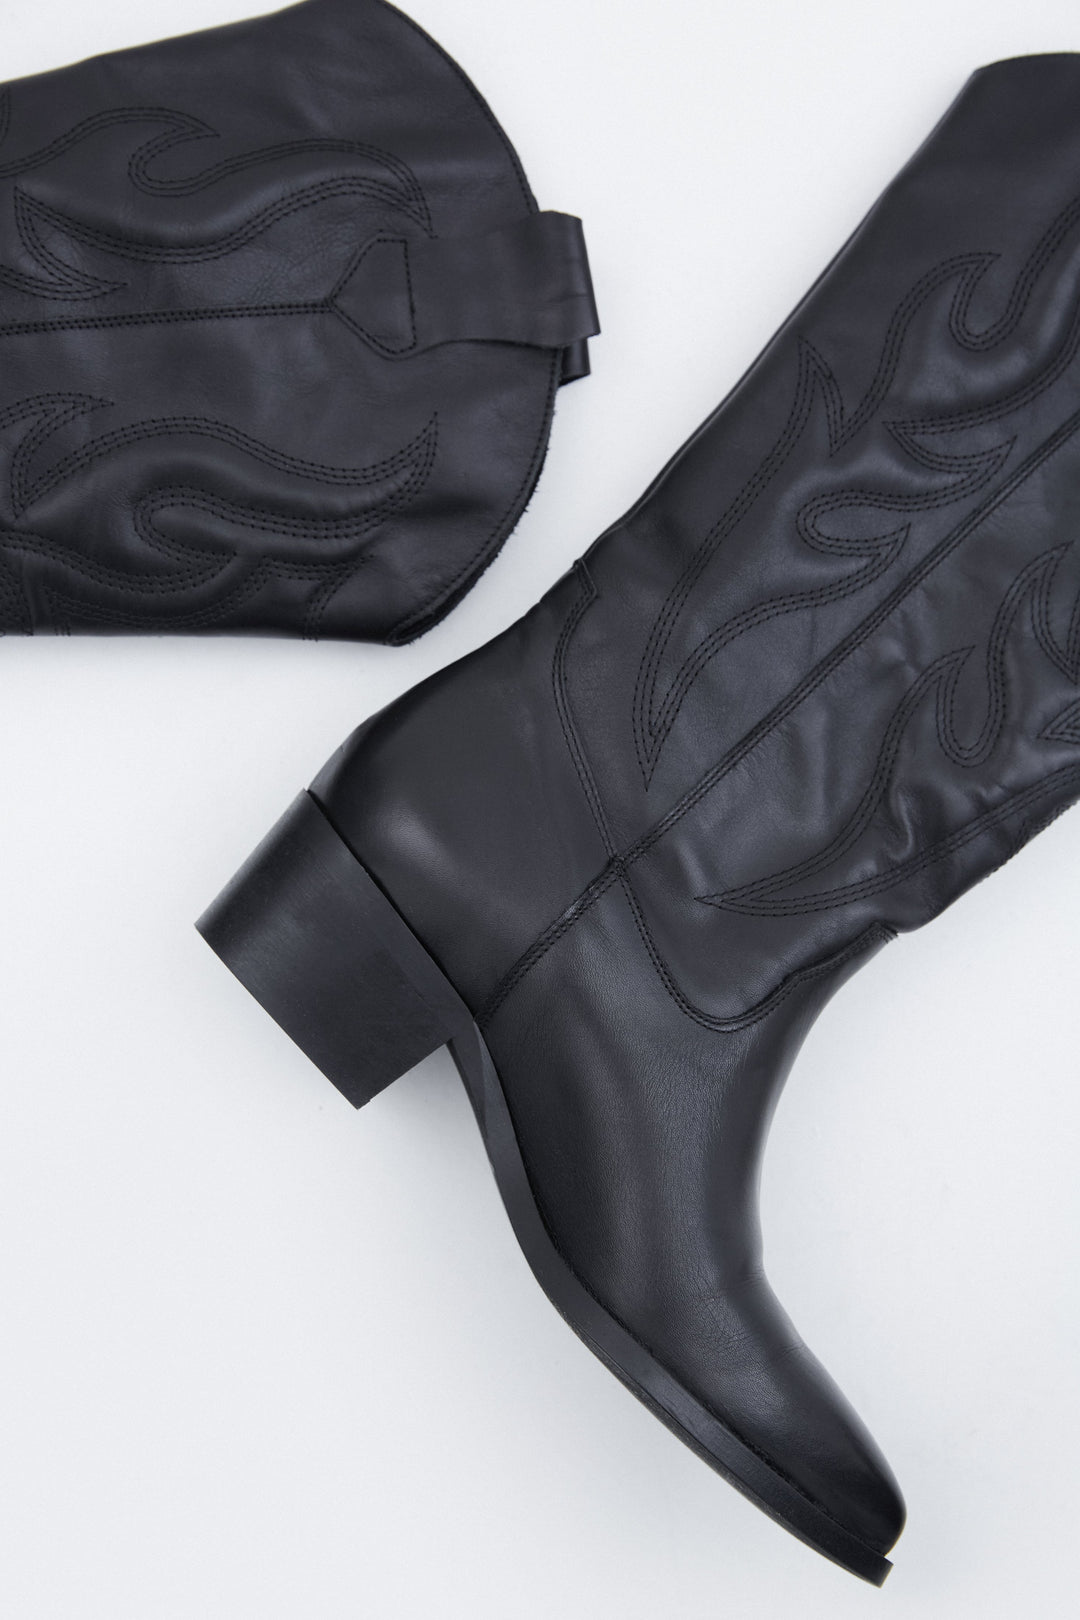 Black leather women's cowboy boots by Estro.